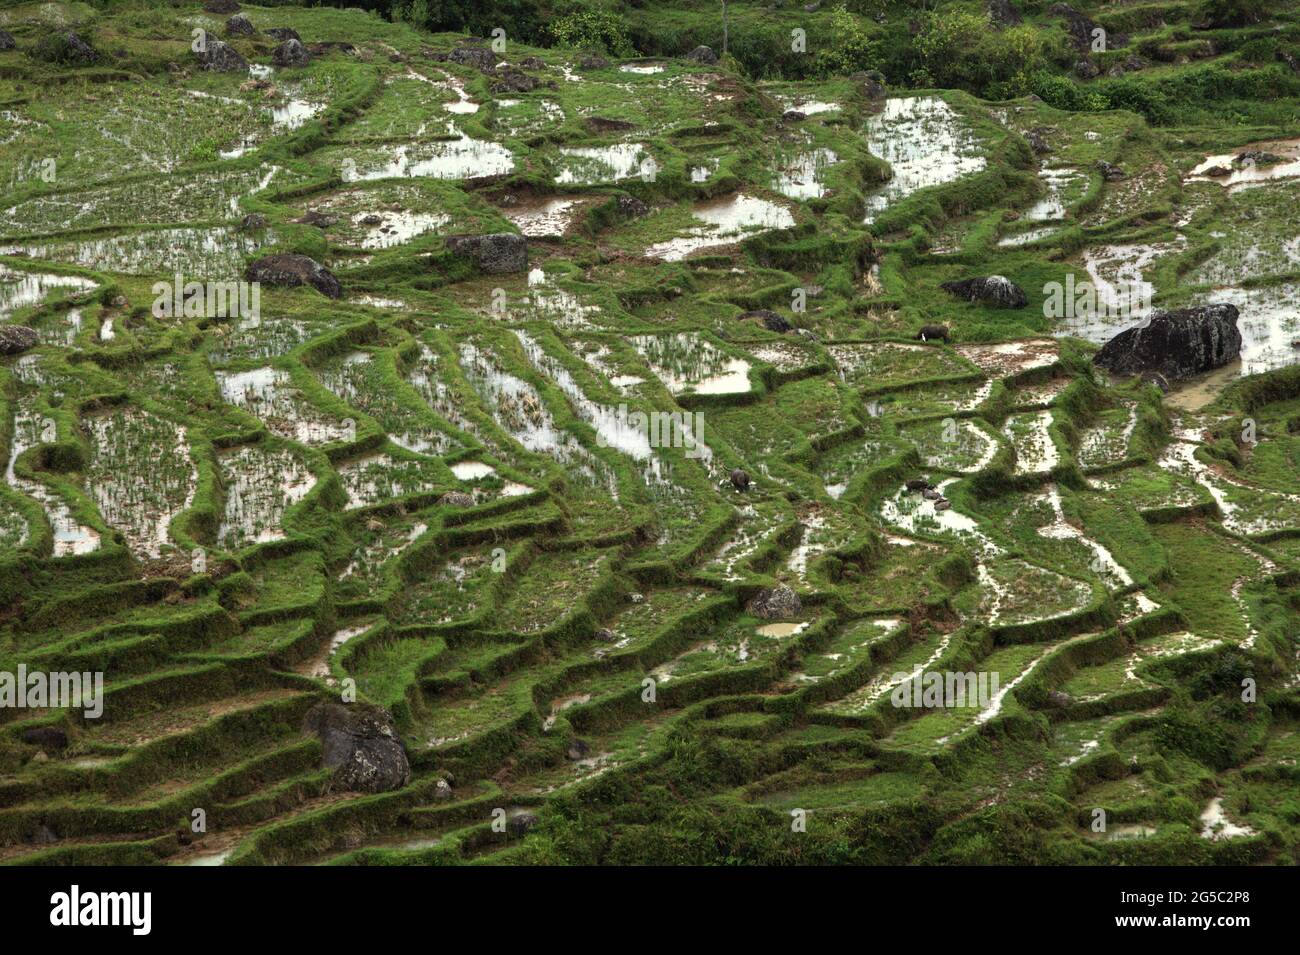 Reisterrassen in Batutumonga, Lempo, Nord-Toraja, Süd-Sulawesi, Indonesien. Höhere Temperaturen, die durch die globale Erwärmung verursacht werden, dürften die Reiserträge in Indonesien verringern. Veränderungen der El-Nino-Muster, die den Beginn und die Dauer der Regenzeit beeinflussen, bringen auch die landwirtschaftliche Produktion in einen anfälligen Status. Die Entwicklung neuer oder verbesserter lokaler Reissorten, die widerstandsfähiger sind - wie jüngste Studien in anderen Ländern - könnte einer der Schlüssel zur Milderung sein. Stockfoto